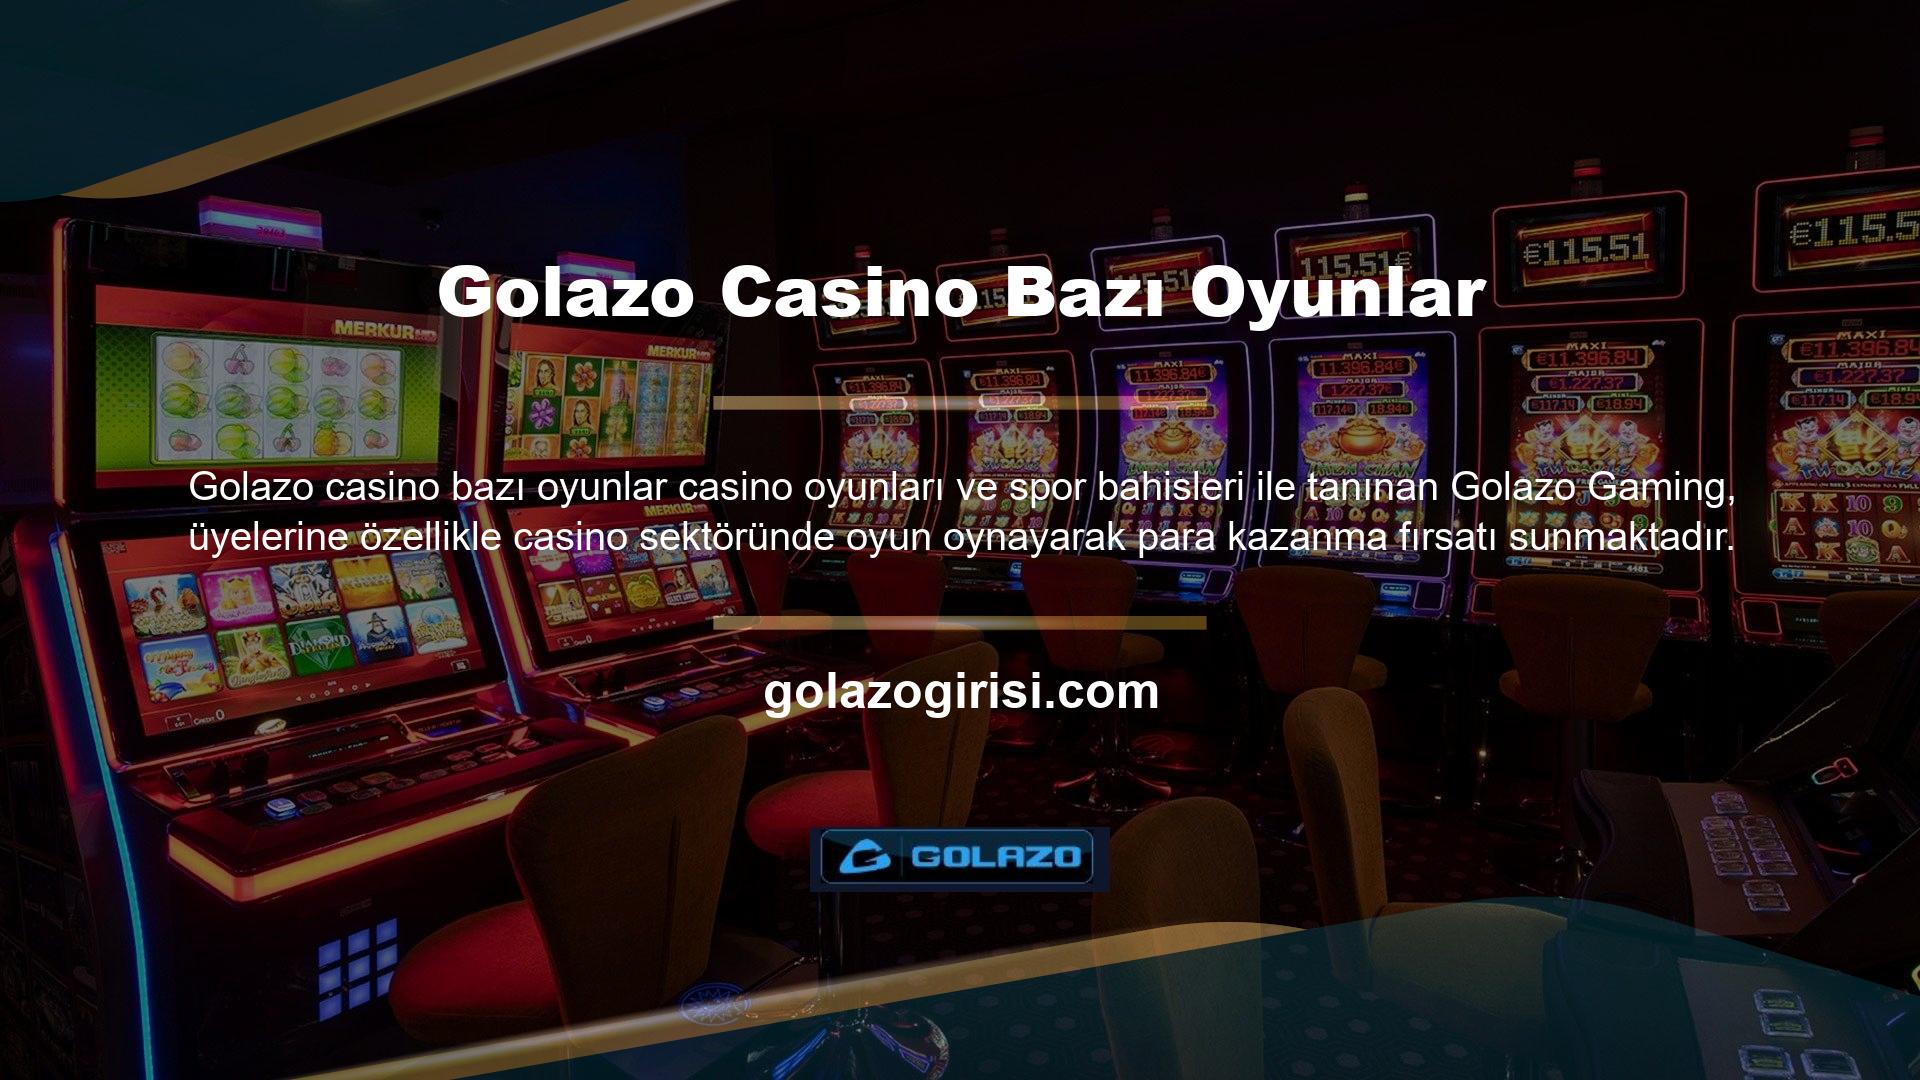 Casino oyunlarına ait rulet ve poker gibi masa oyunları, Golazo mevcut yüksek bahisli oyun türleridir